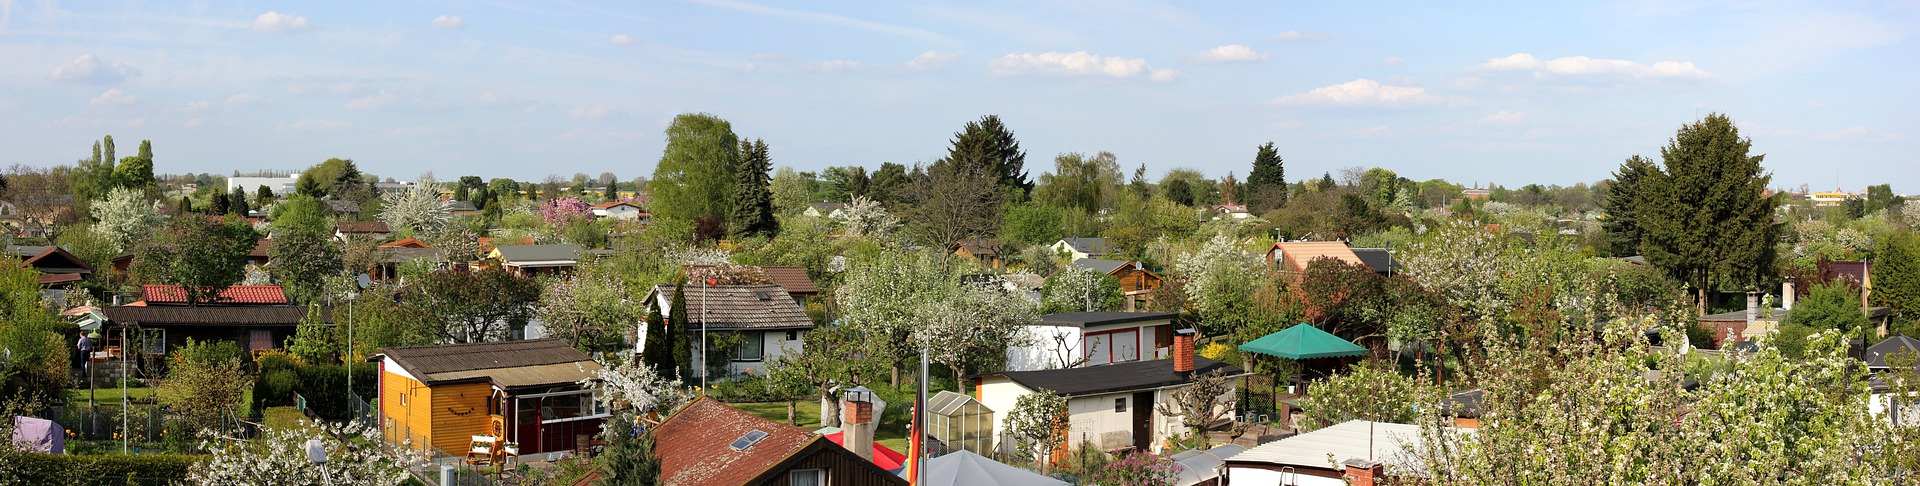 Allotment gardens for lease - Gartenfreunde Stuttgart e.V.